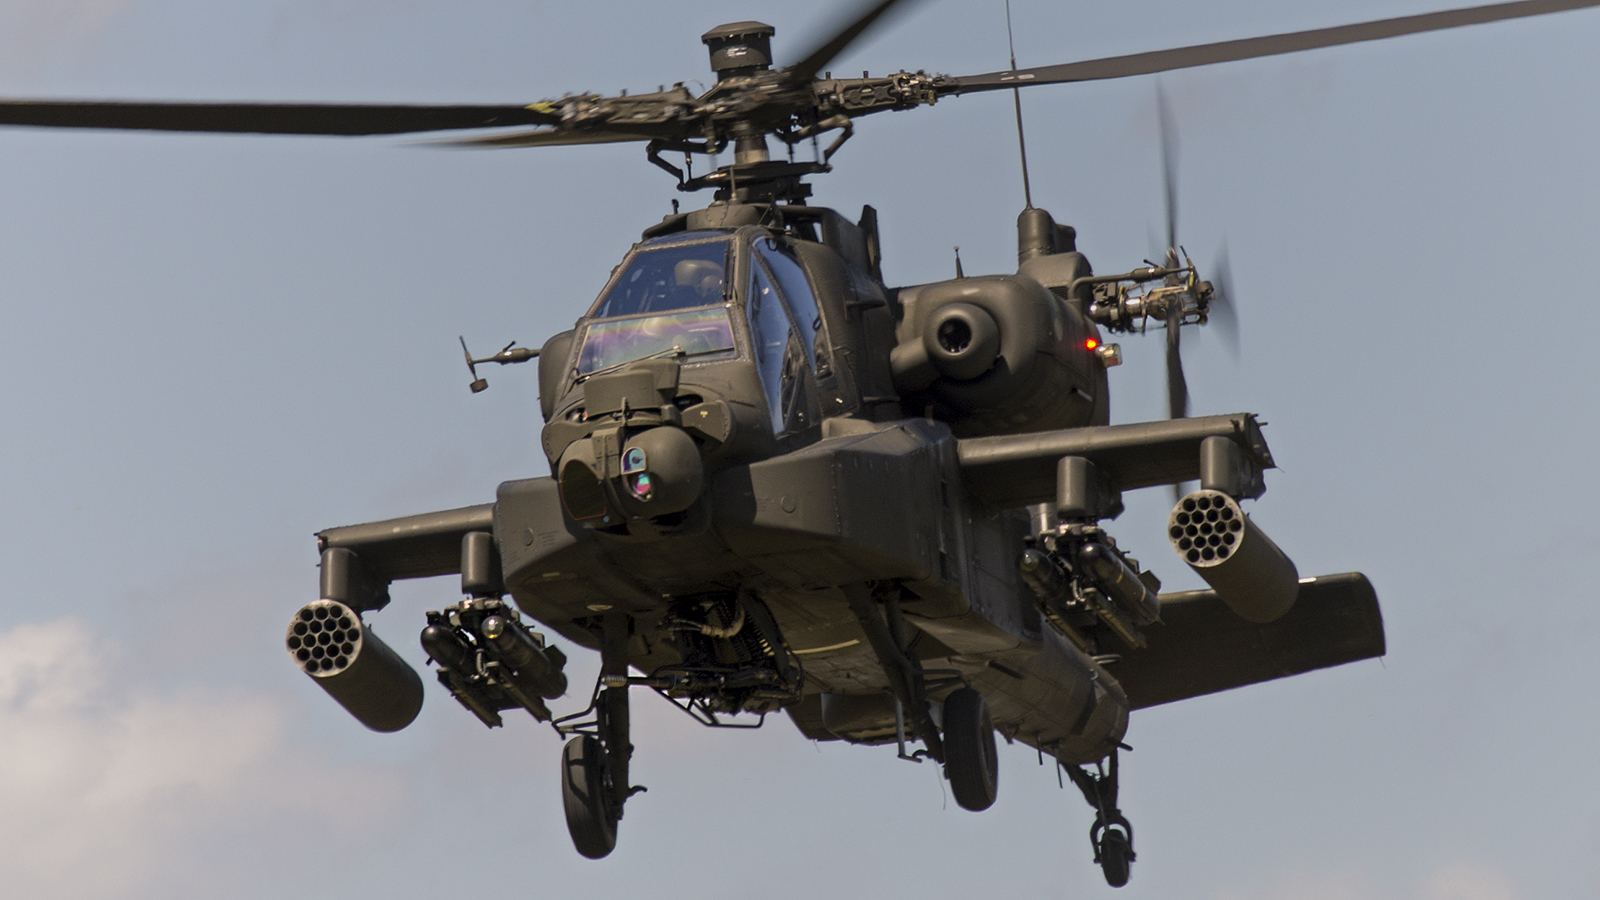 ΑΗ-64 Apache: Το ικανότερο επιθετικό ελικόπτερο των ΗΠΑ σε ένα διαφωτιστικό βίντεο